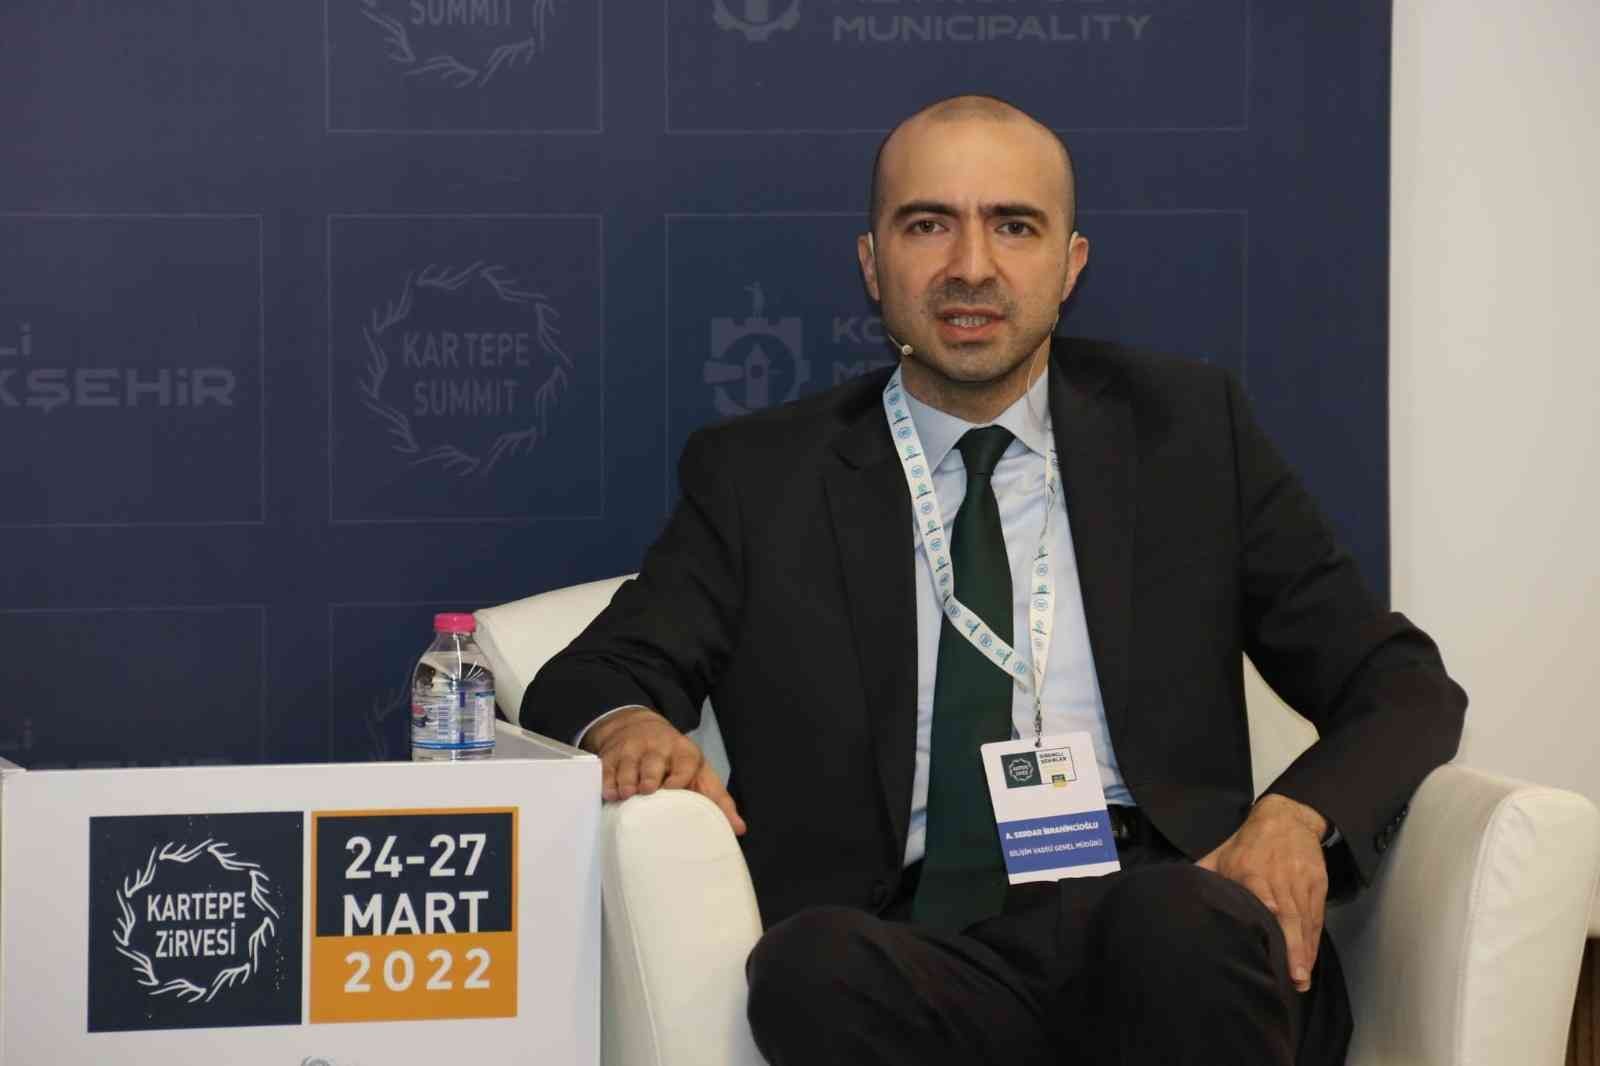 Kartepe Zirvesi 2022’ye katılan Bilişim Vadisi Genel Müdürü Ahmet Serdar İbrahimcioğlu, Bilişim Vadisi’nde uçan araba testlerine başlandığını ve ...